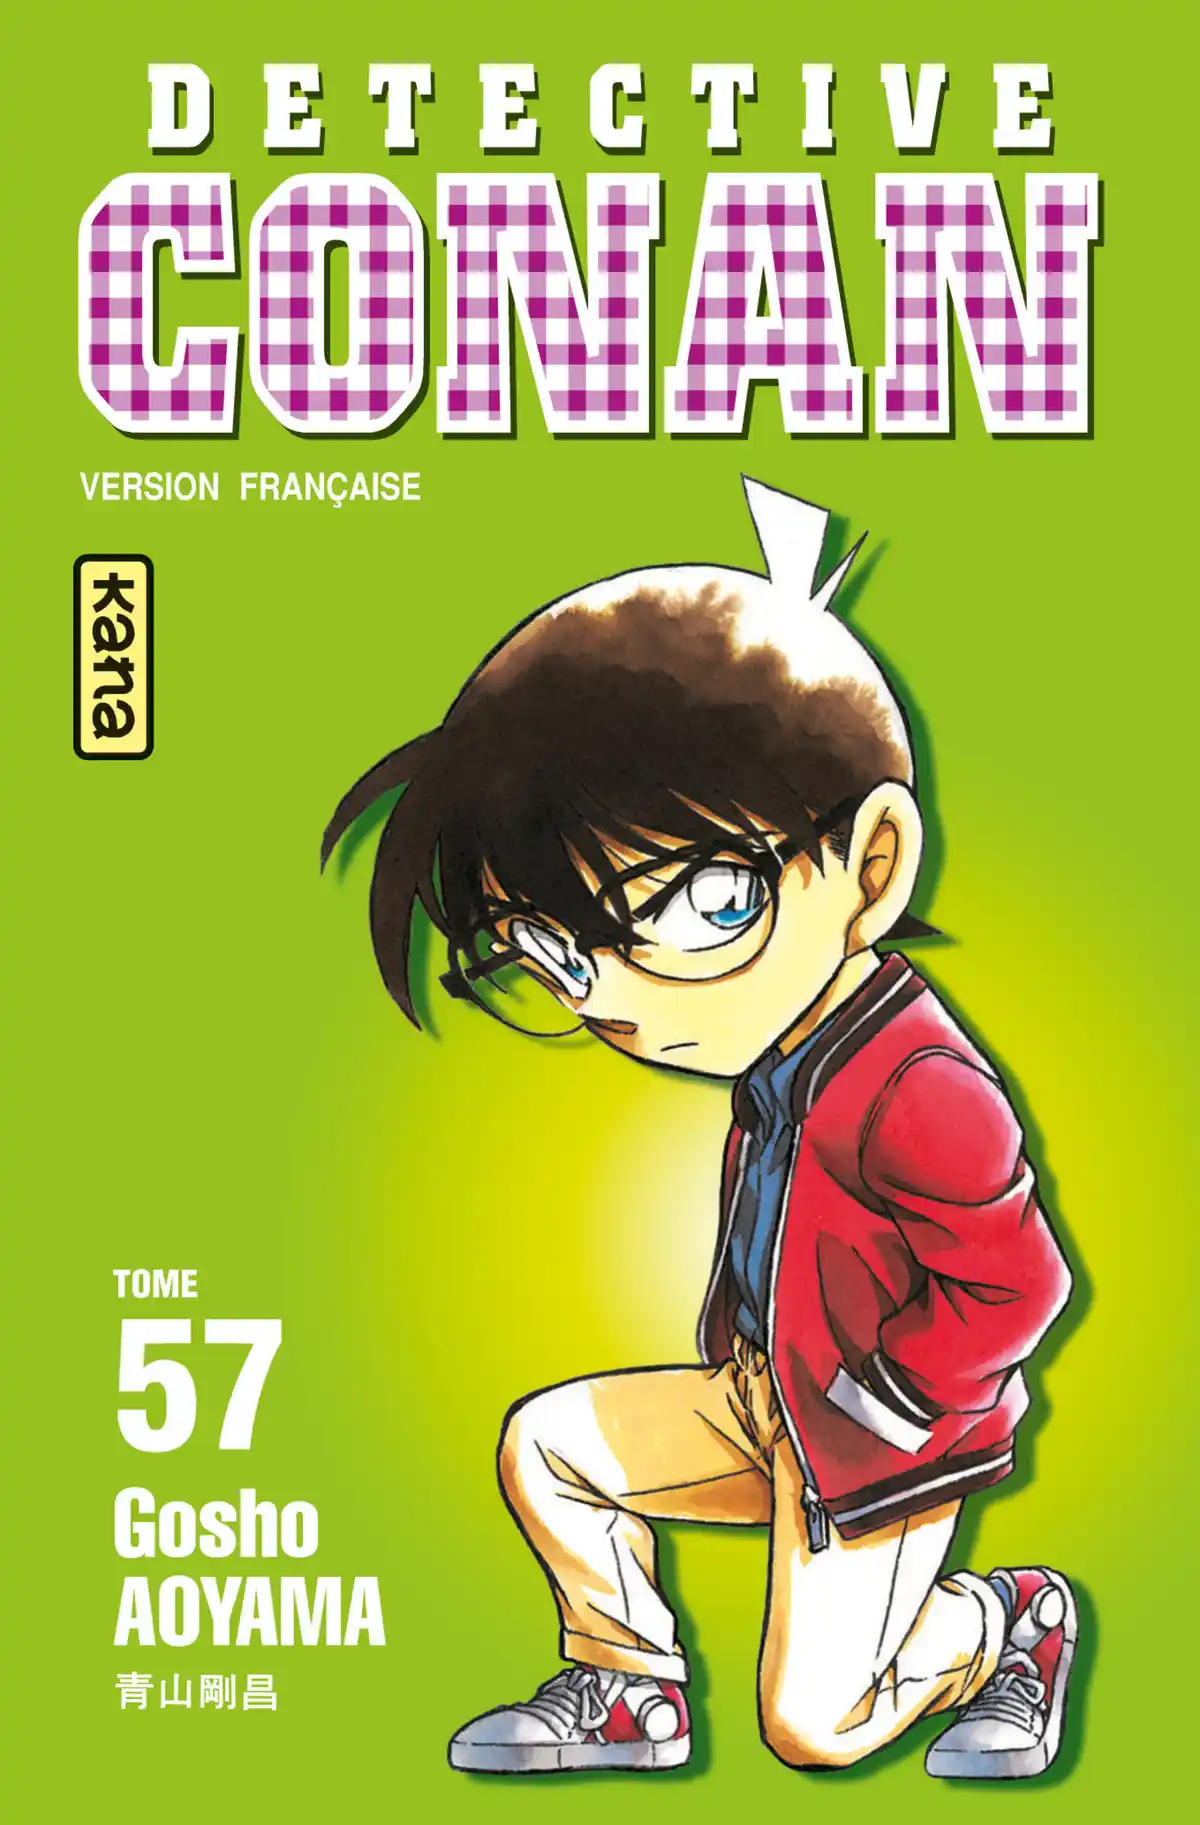 Détective Conan Volume 57 page 1